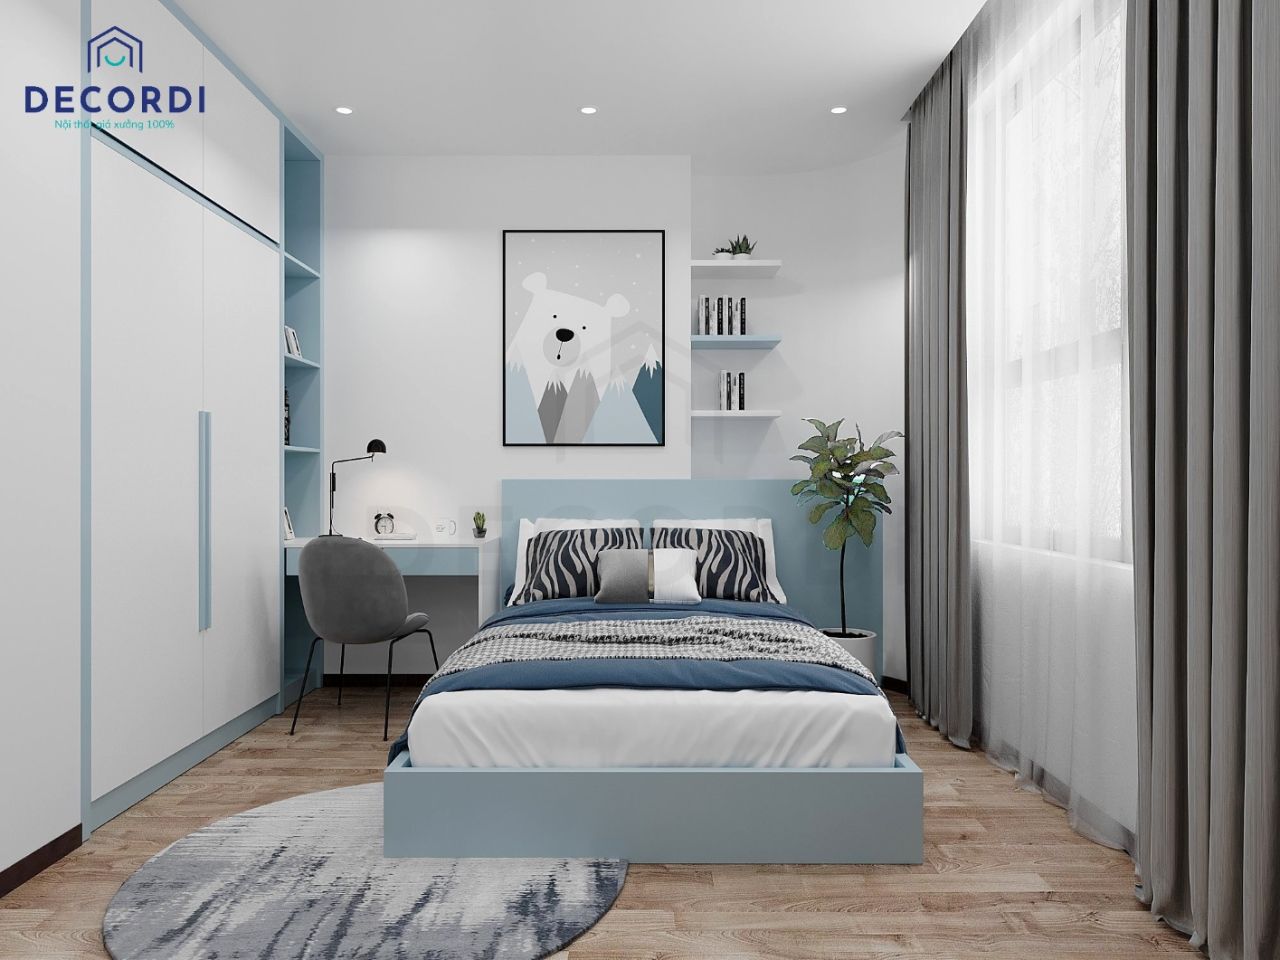 Nội thất phòng ngủ màu xanh trung tính mang đến cảm giác tháng mát